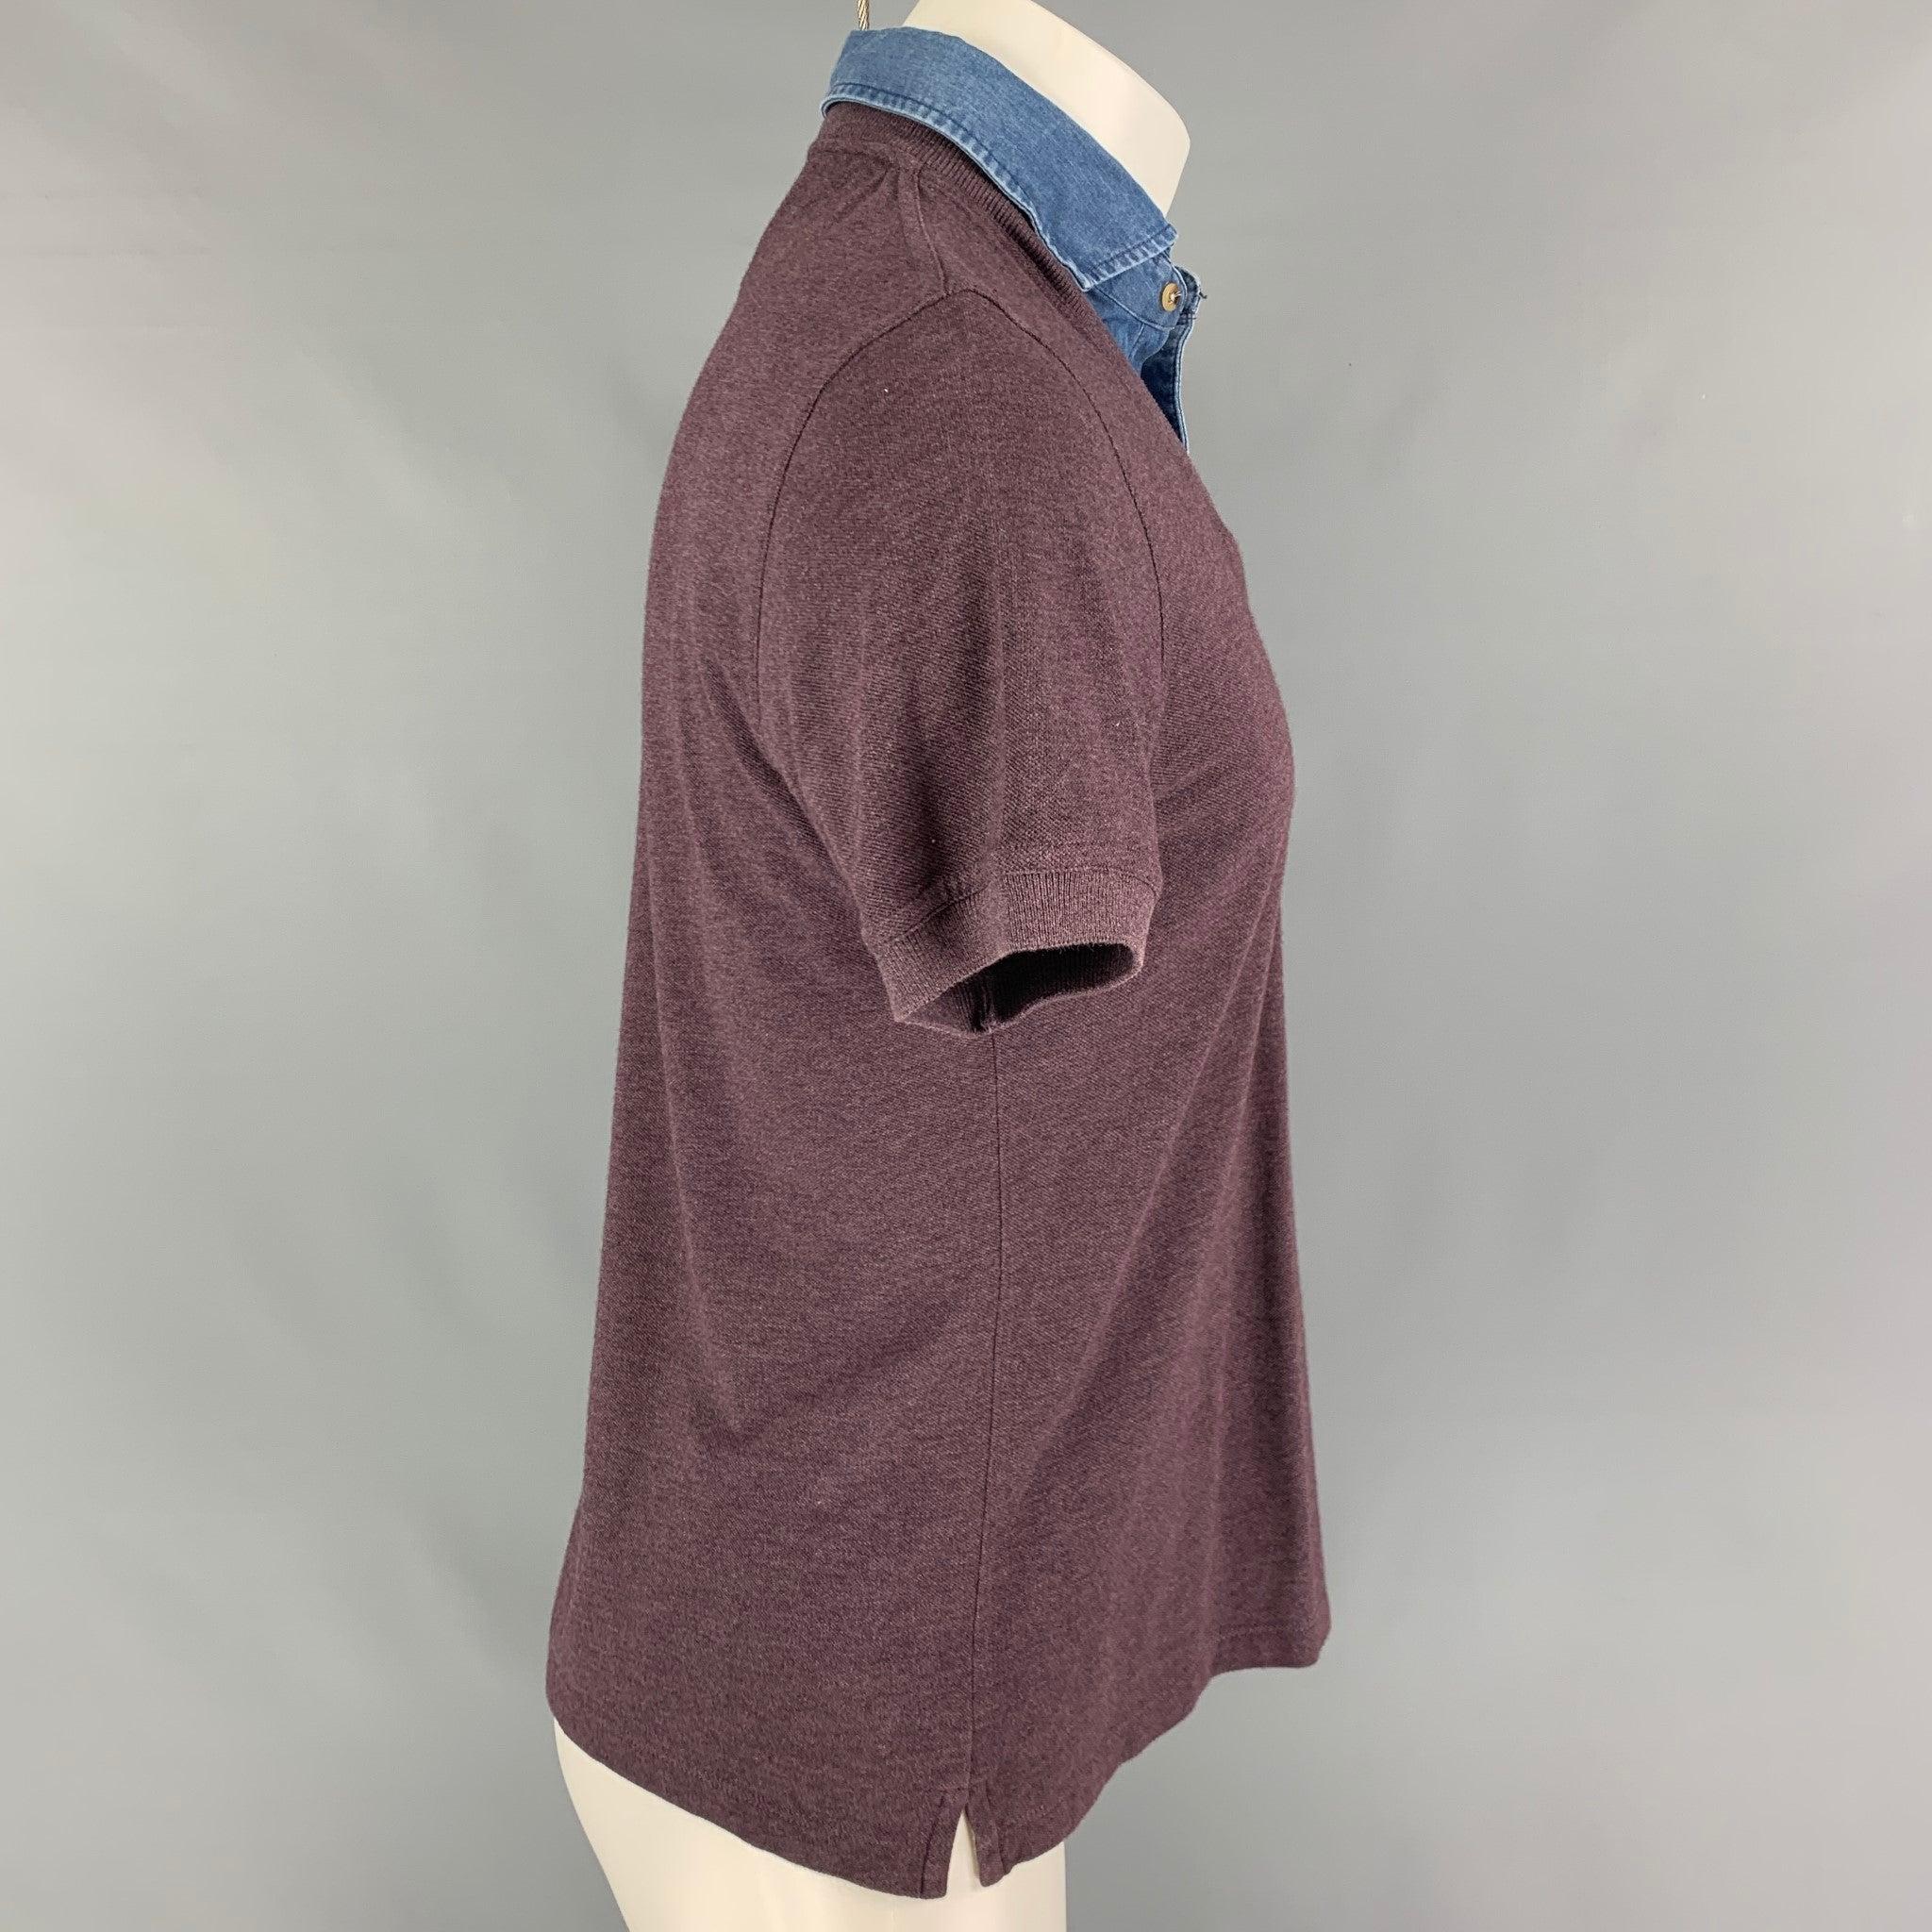 Le gilet BRUNELLO CUCINELLI en coton violet présente une bordure de chemise, des manches courtes et un col en V. Fabriquées en Italie.
Très bien
Etat d'occasion.  

Marqué :   S 

Mesures : 
 
Épaule : 16.5 pouces  Poitrine : 38 pouces  Manche : 9